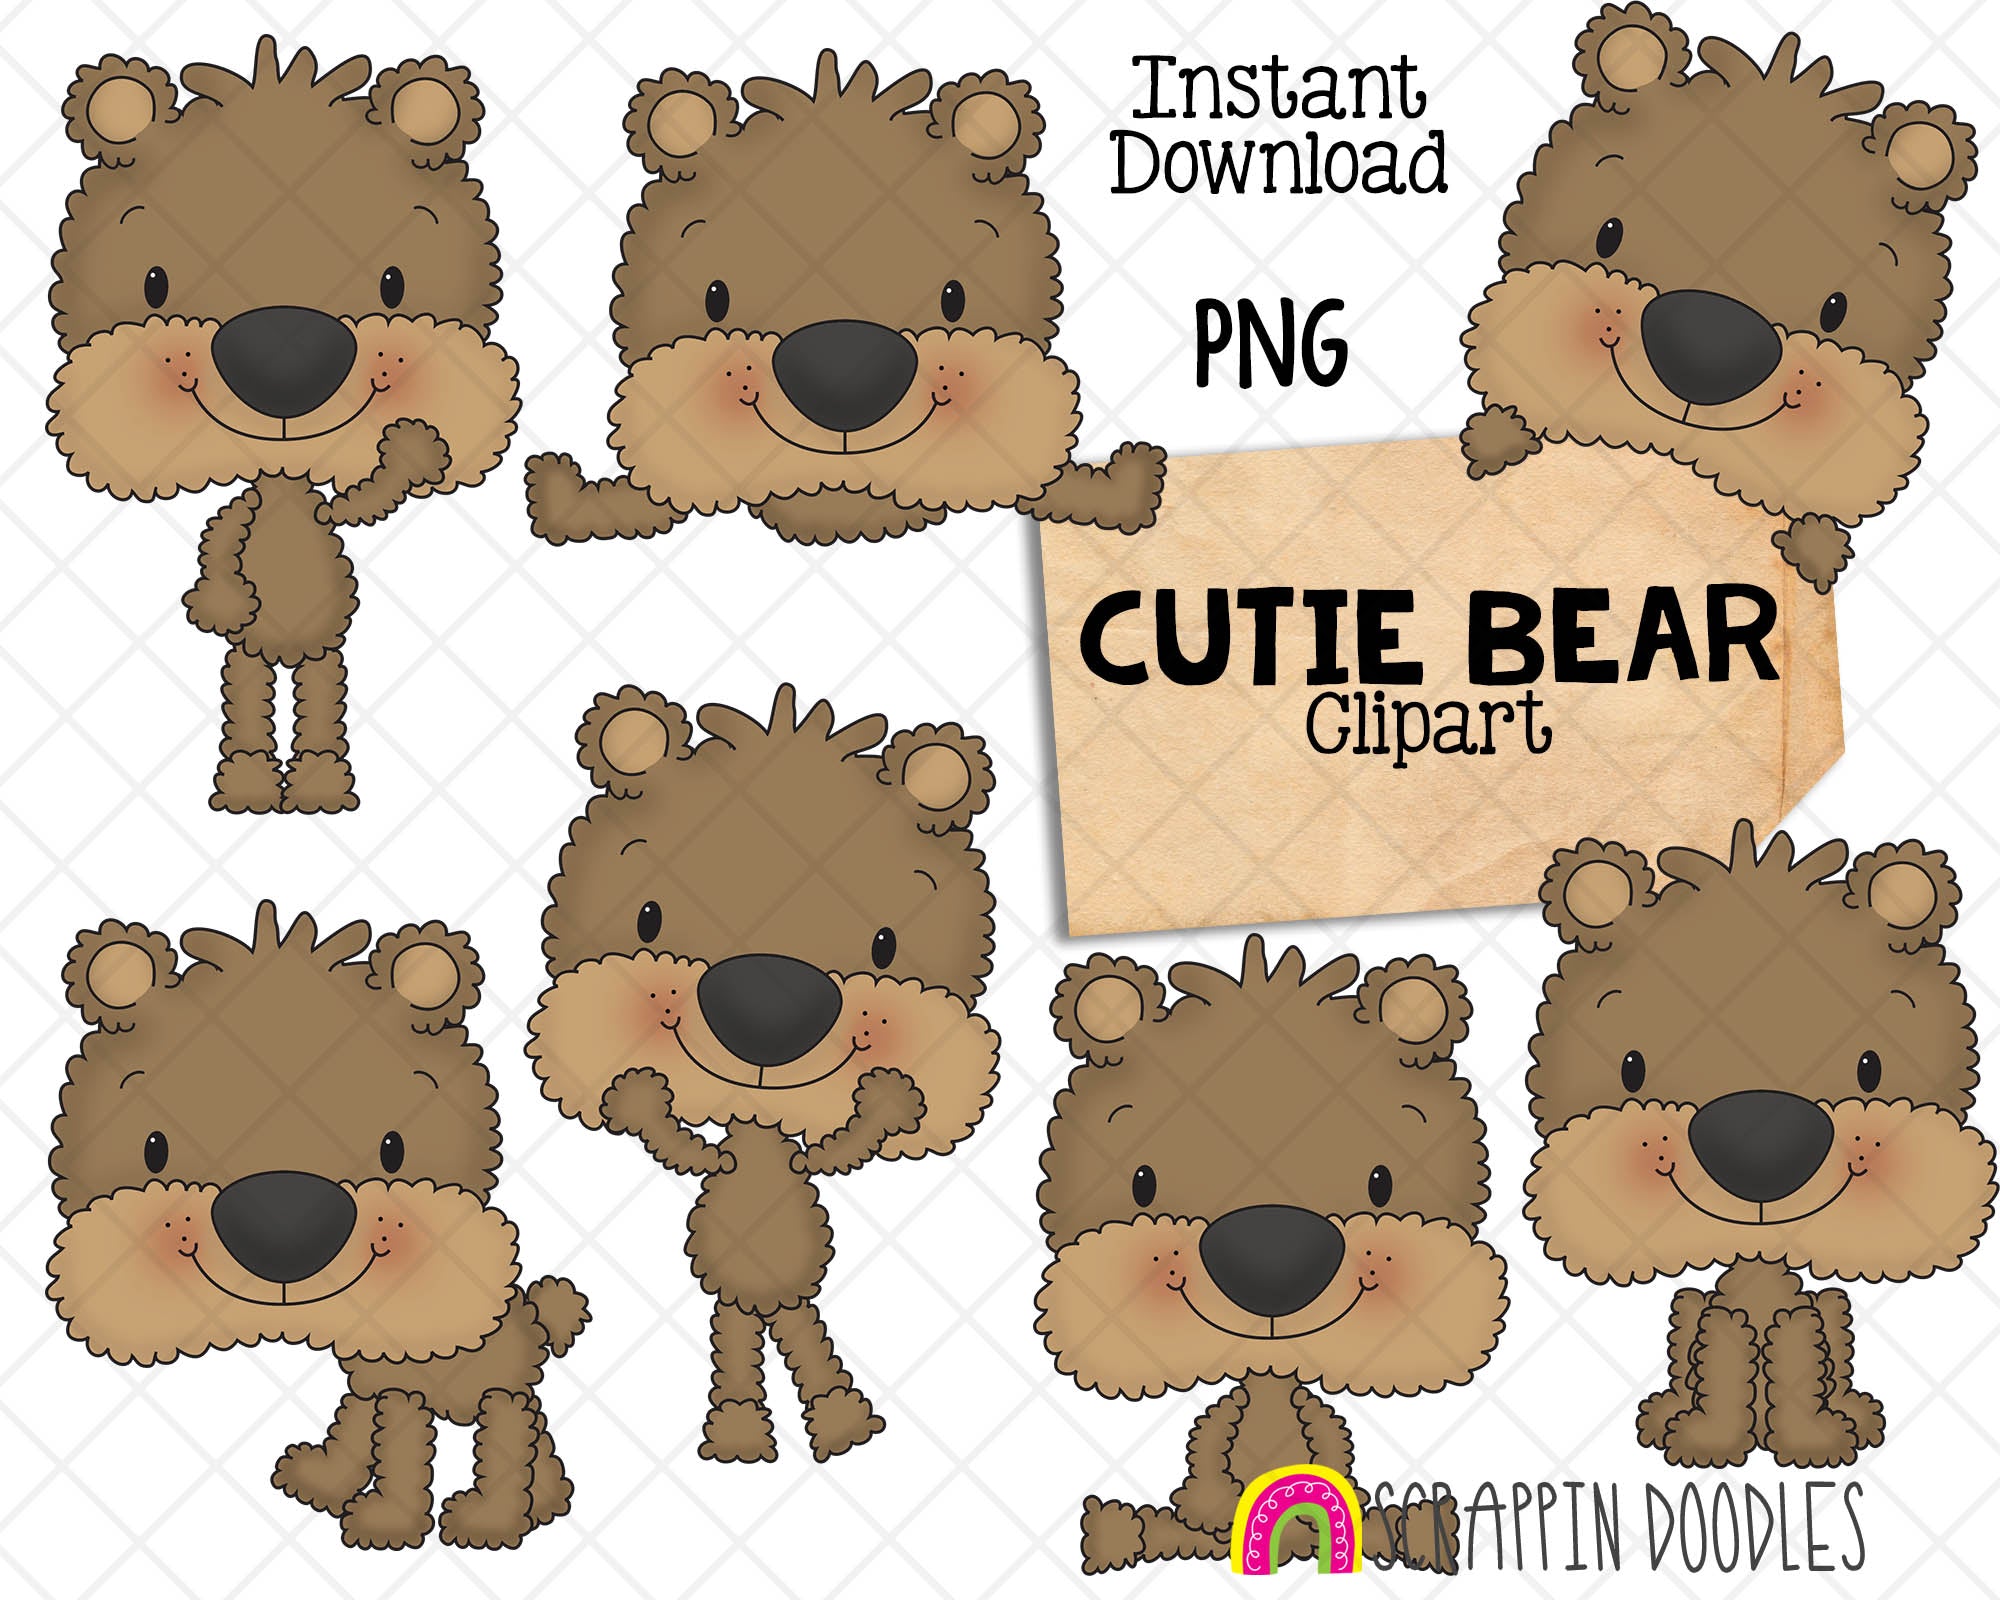 The Original Doodle Bear, doodle bears, doodlebears, original doodle,  original bears, teddy bears